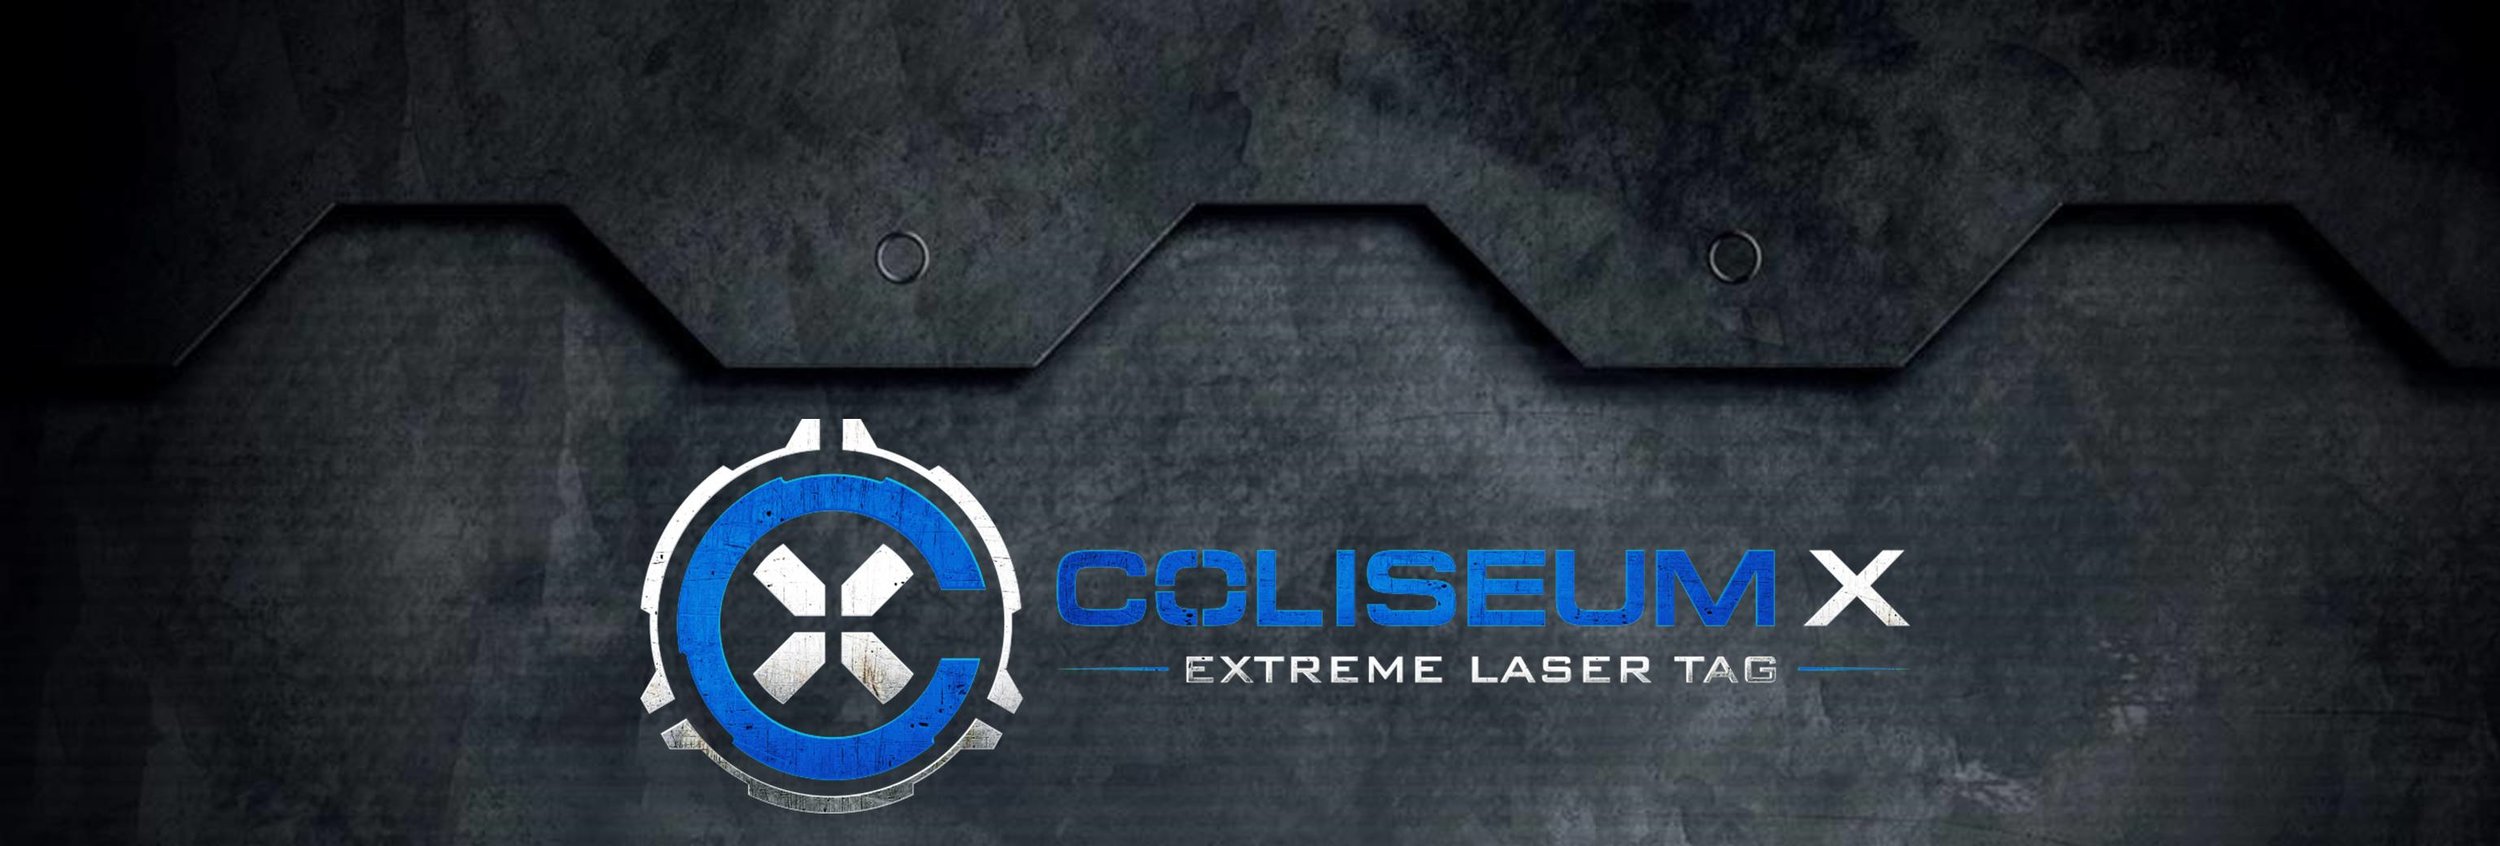 Laser X Official Website